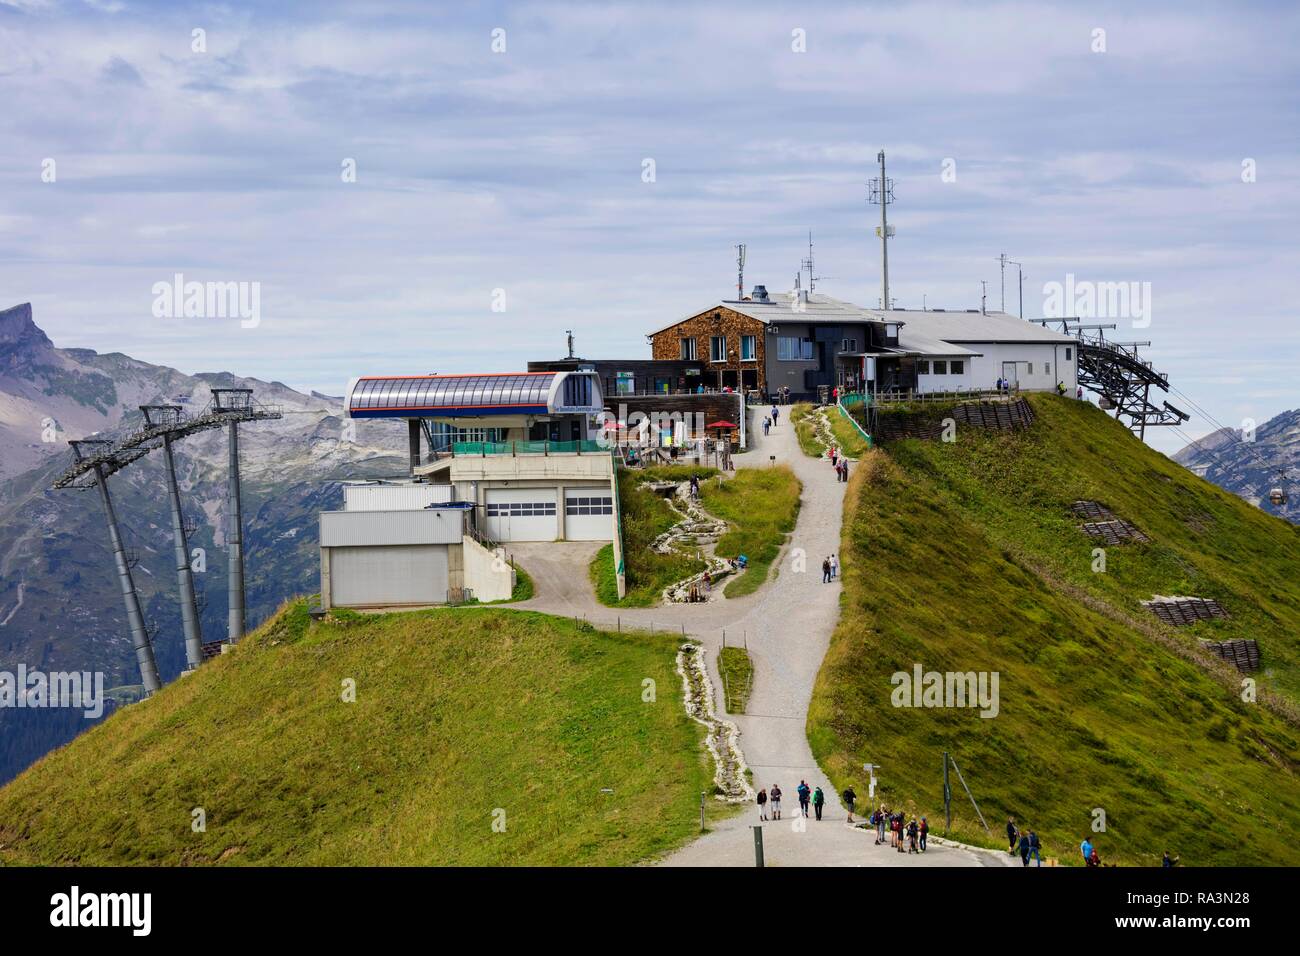 Kanzelwand mountain station, Allgäu Alps, Kleinwalsertal, Vorarlberg, Austria Stock Photo